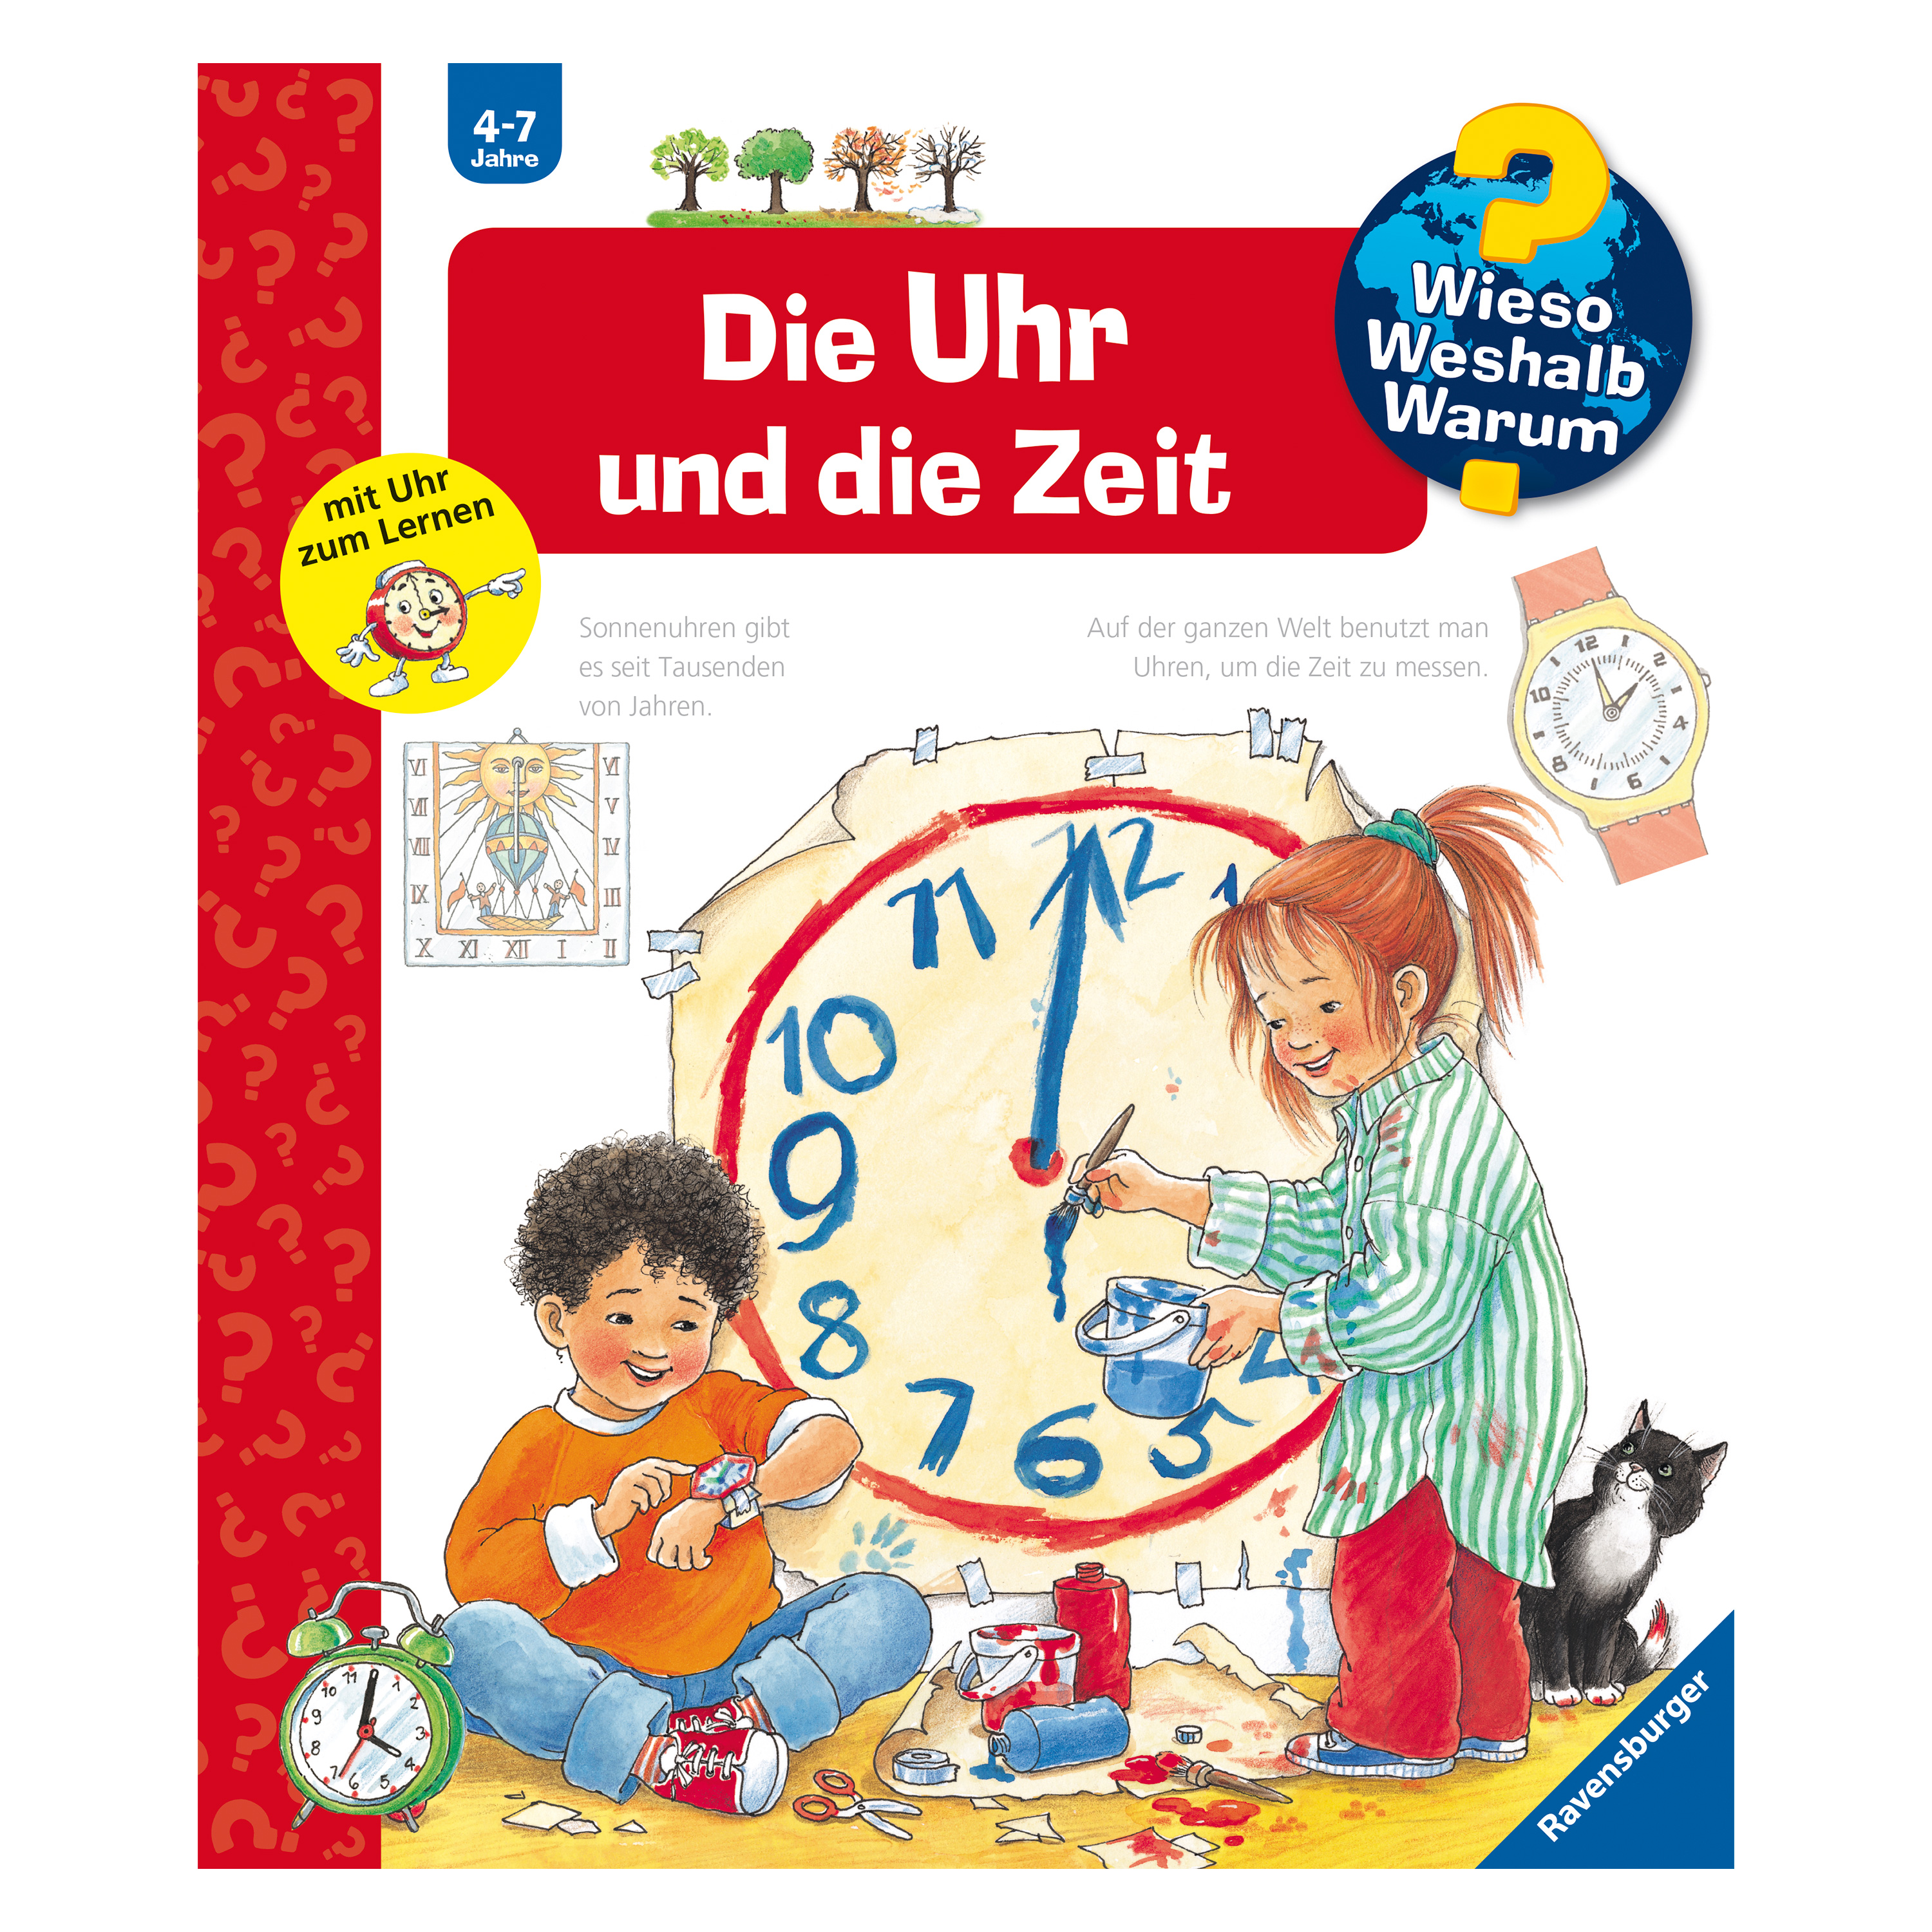 WWW 'Die Uhr und die Zeit' (Bd. 25)